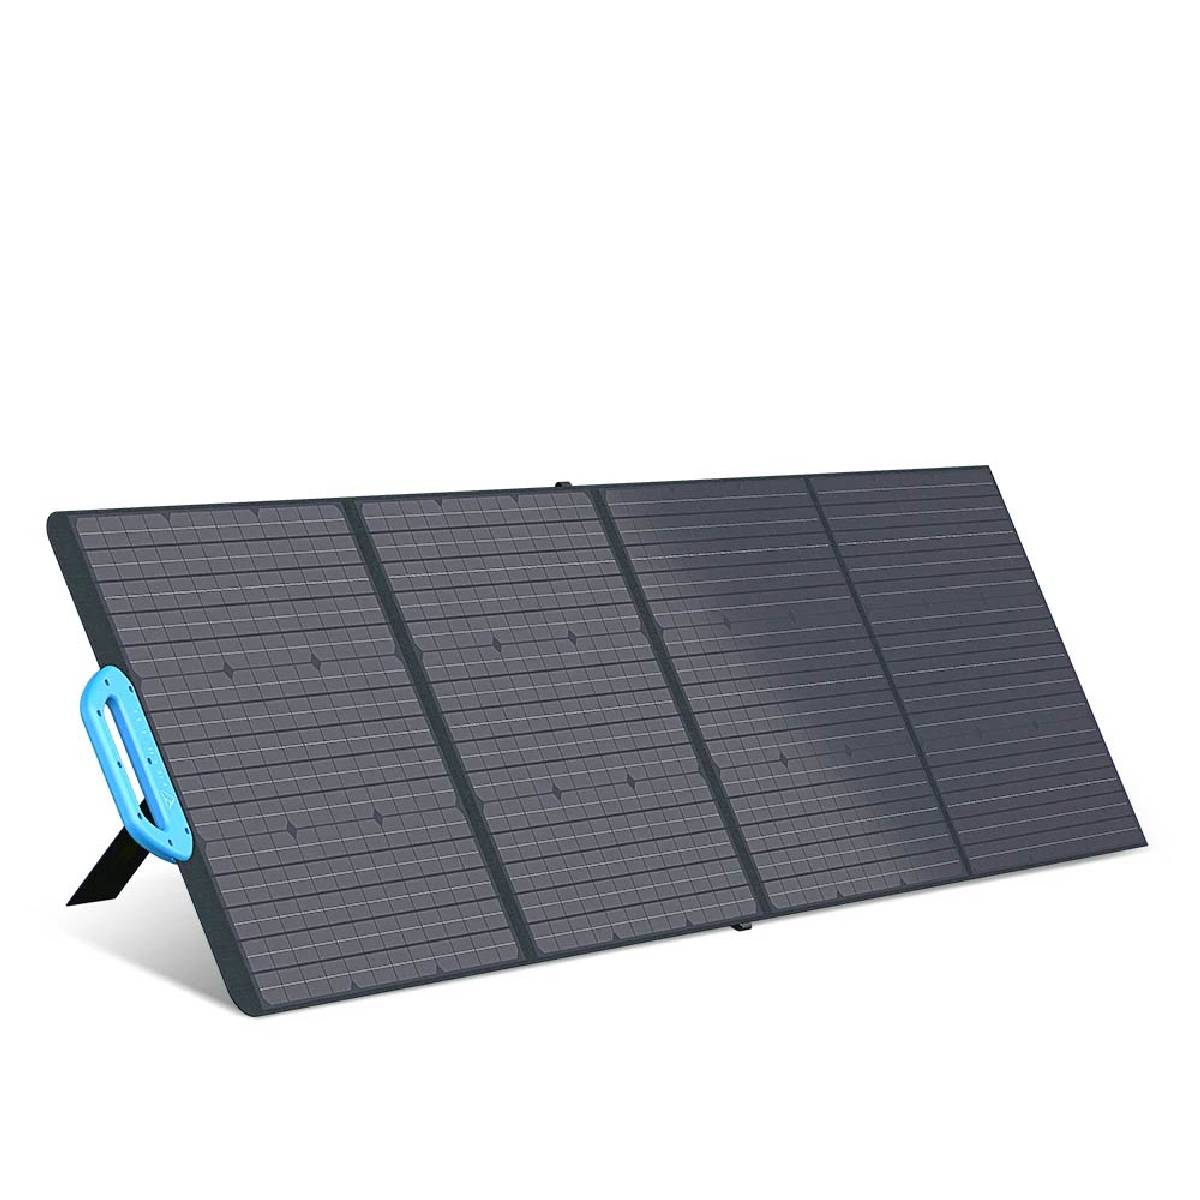 Bluetti PV200 Solar Panel 200W faltbares Solarmodul